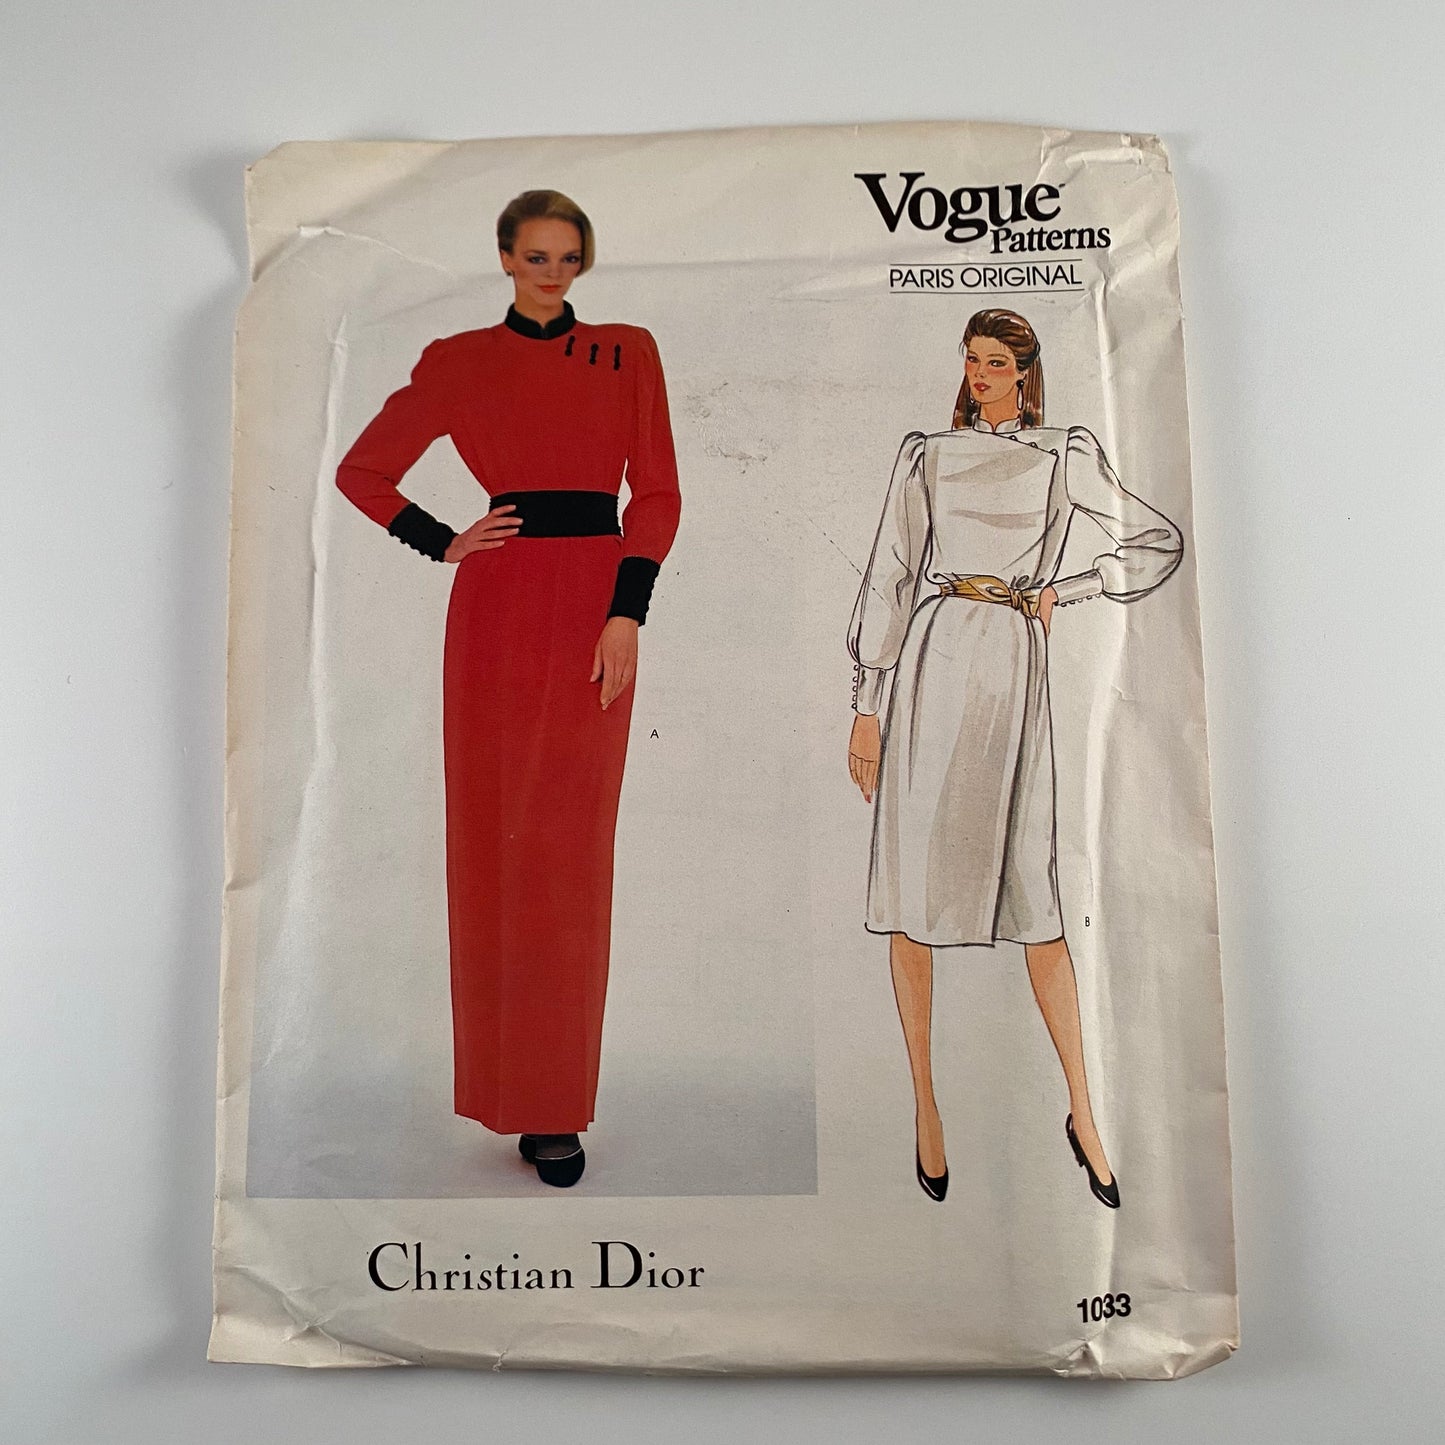 1980s Vogue Pattern 1033, Paris Original Christian Dior-Uncut